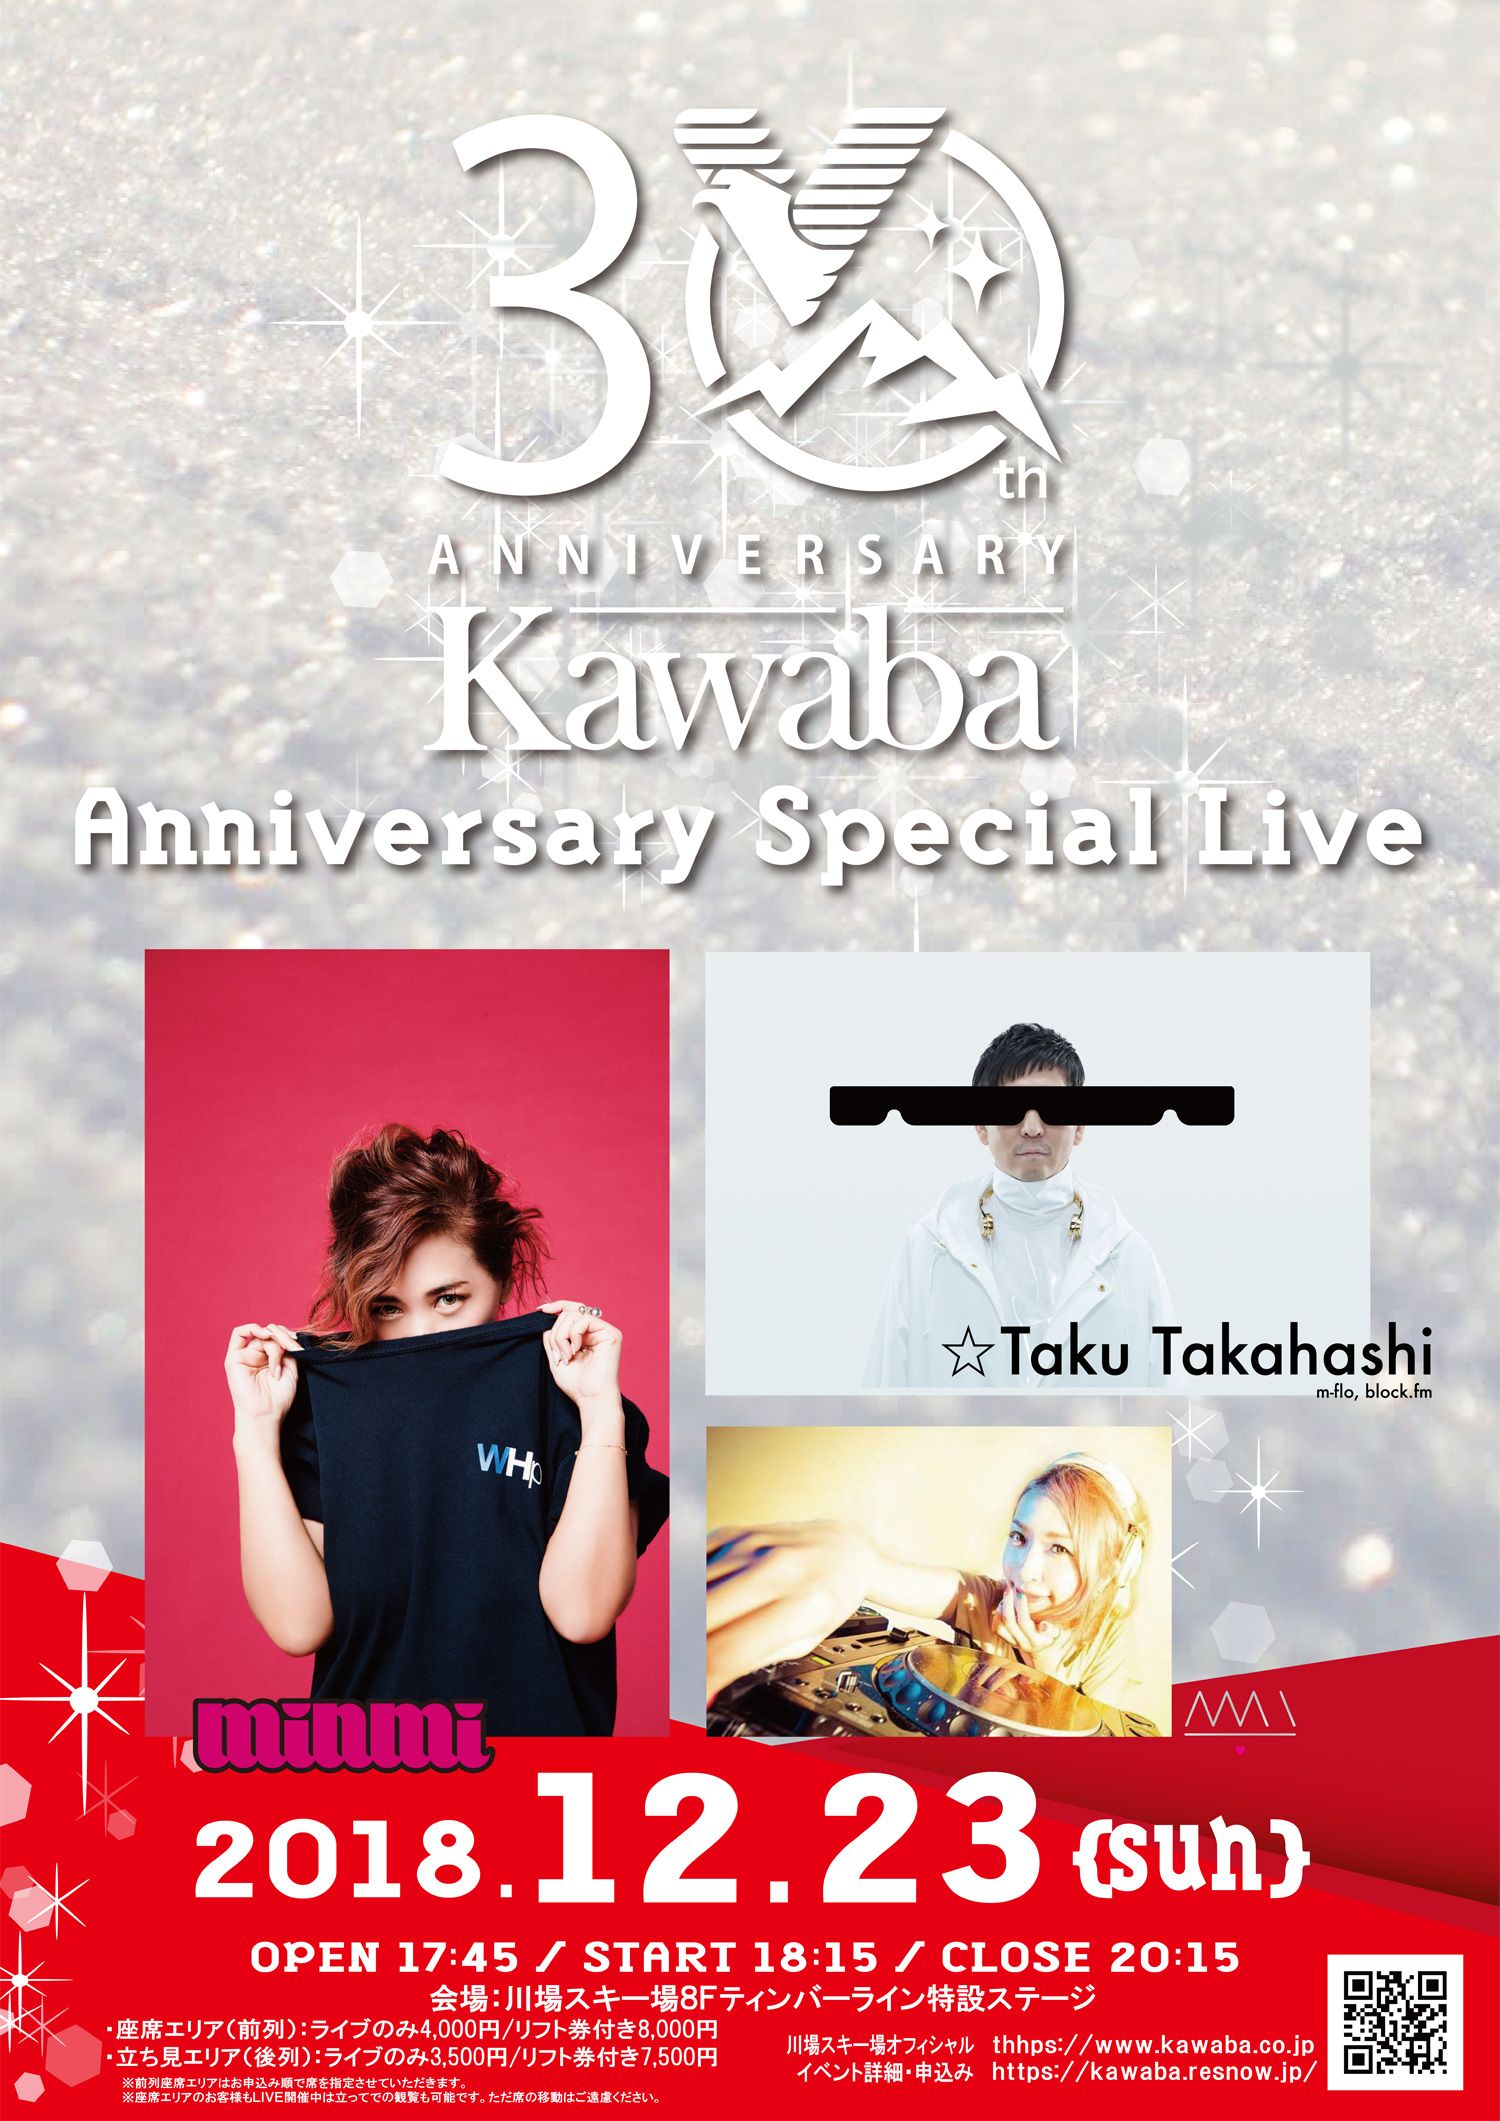 Kawaba Annivarsary Special Live